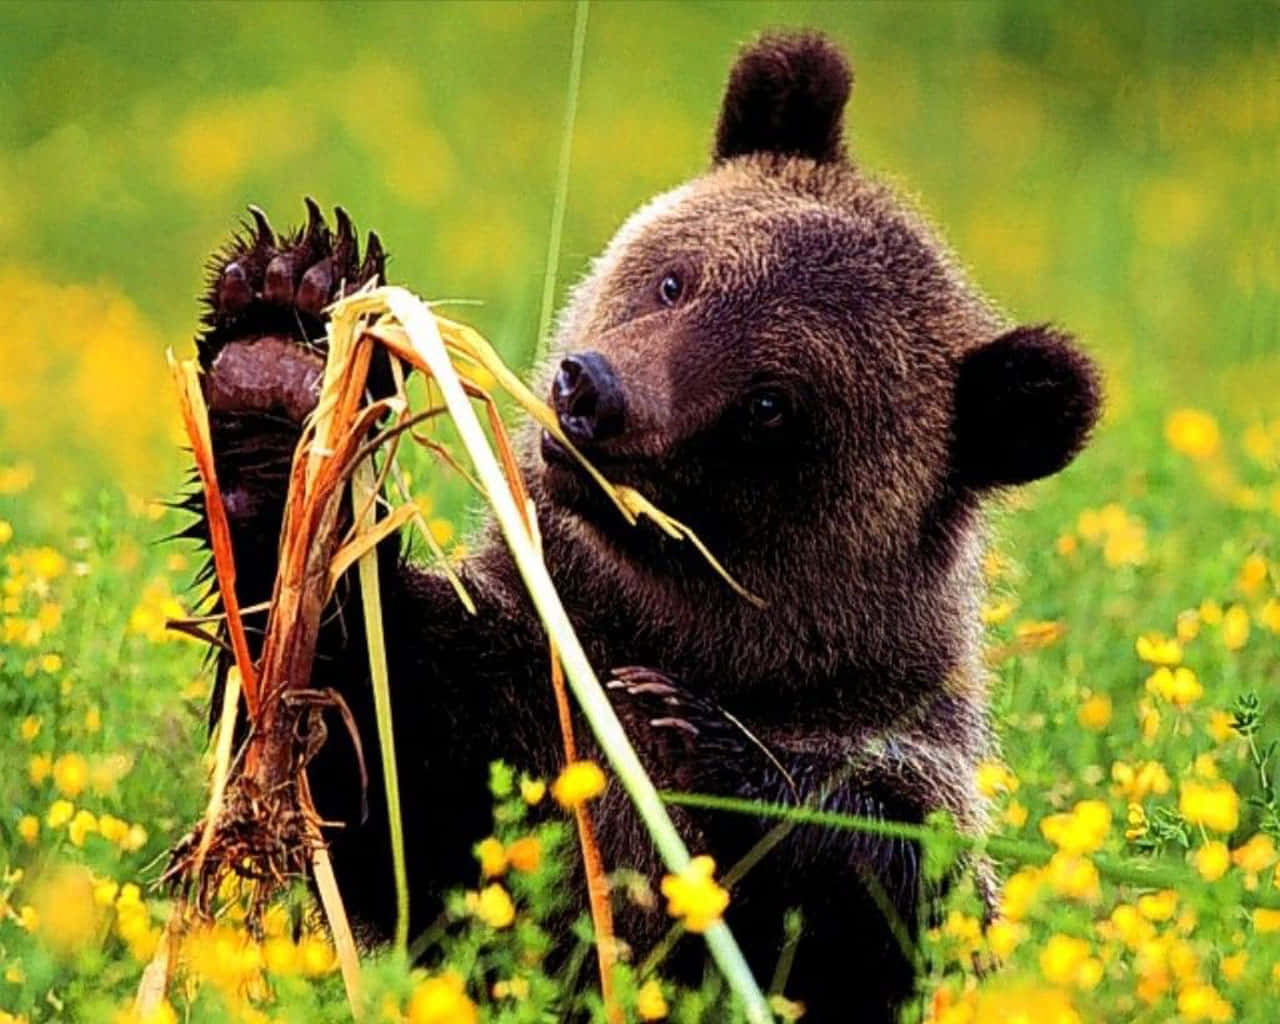 Eingrimmig Aussehender Brauner Bär Sitzt Neben Einem Baumstamm Im Wald.